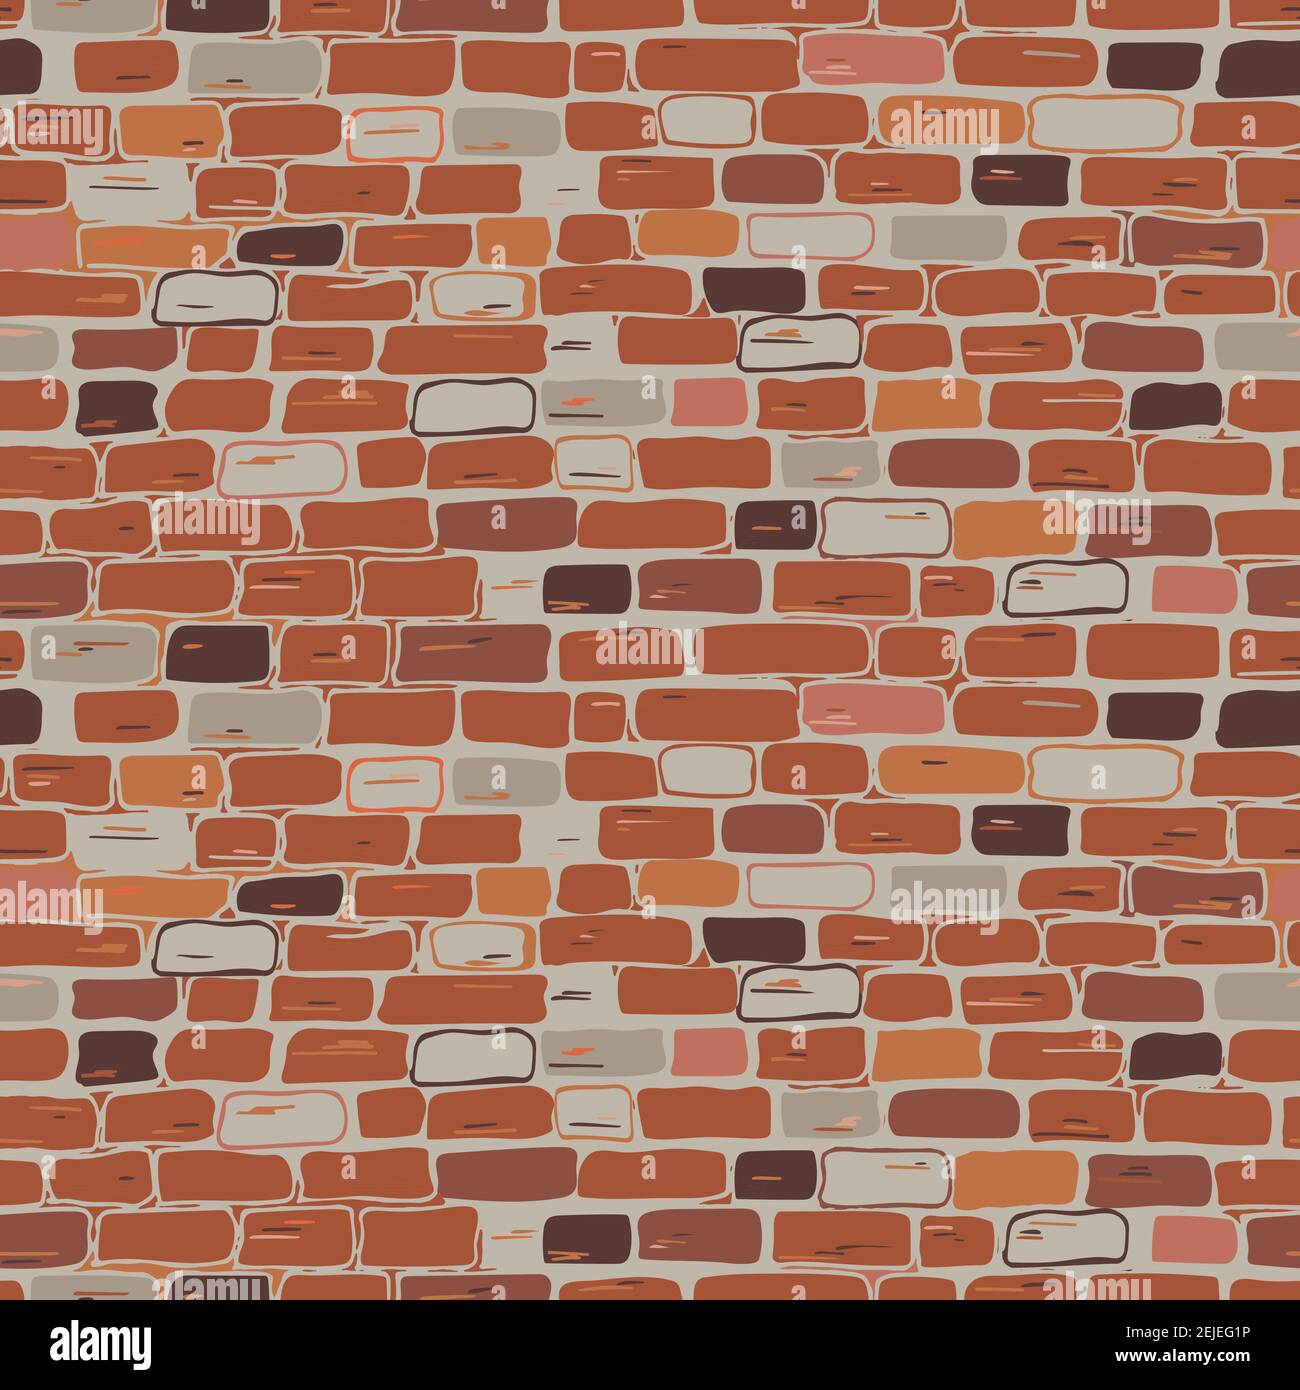 Realistisches Mauerwerk nahtloses Muster. Vektor. Die Wand ist aus Ziegelstein, rot, braun, orange, grau. Flache Abbildung Freihandzeichnung Stock Vektor